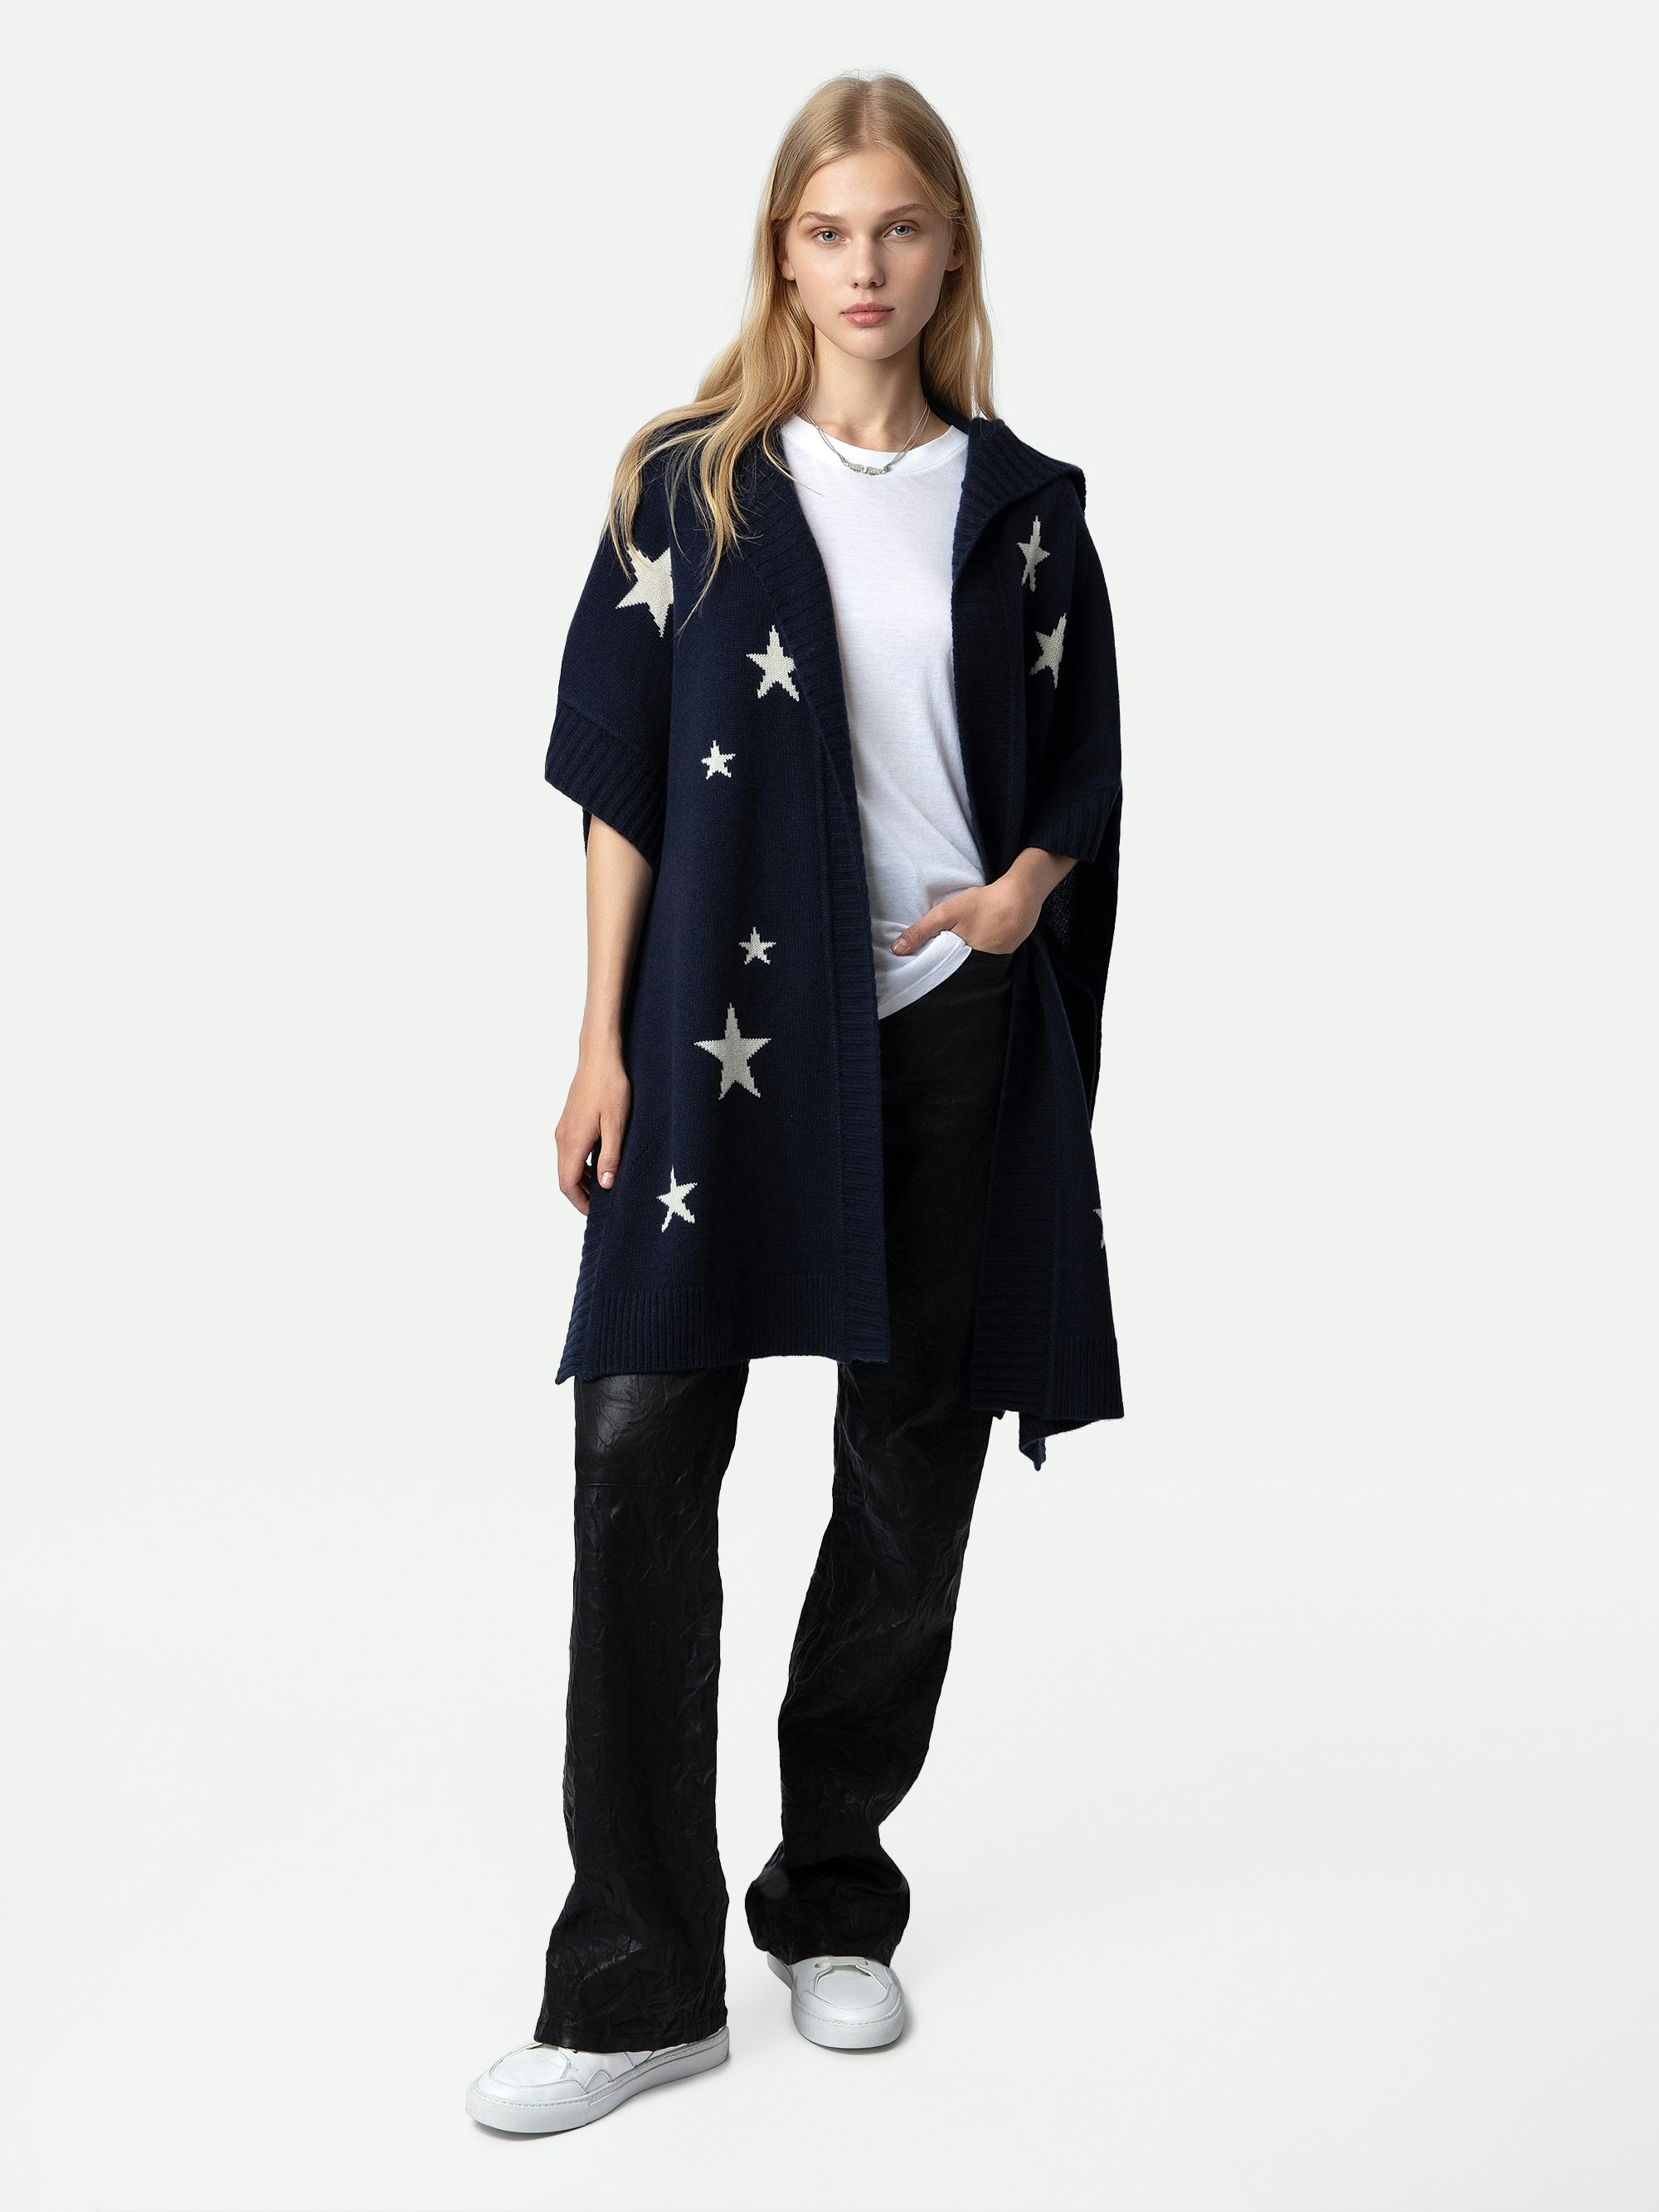 Gilet Inna Stars Cachemire - Gilet manteau long en cachemire bleu marine orné de motifs étoiles en jacquard intarsia.